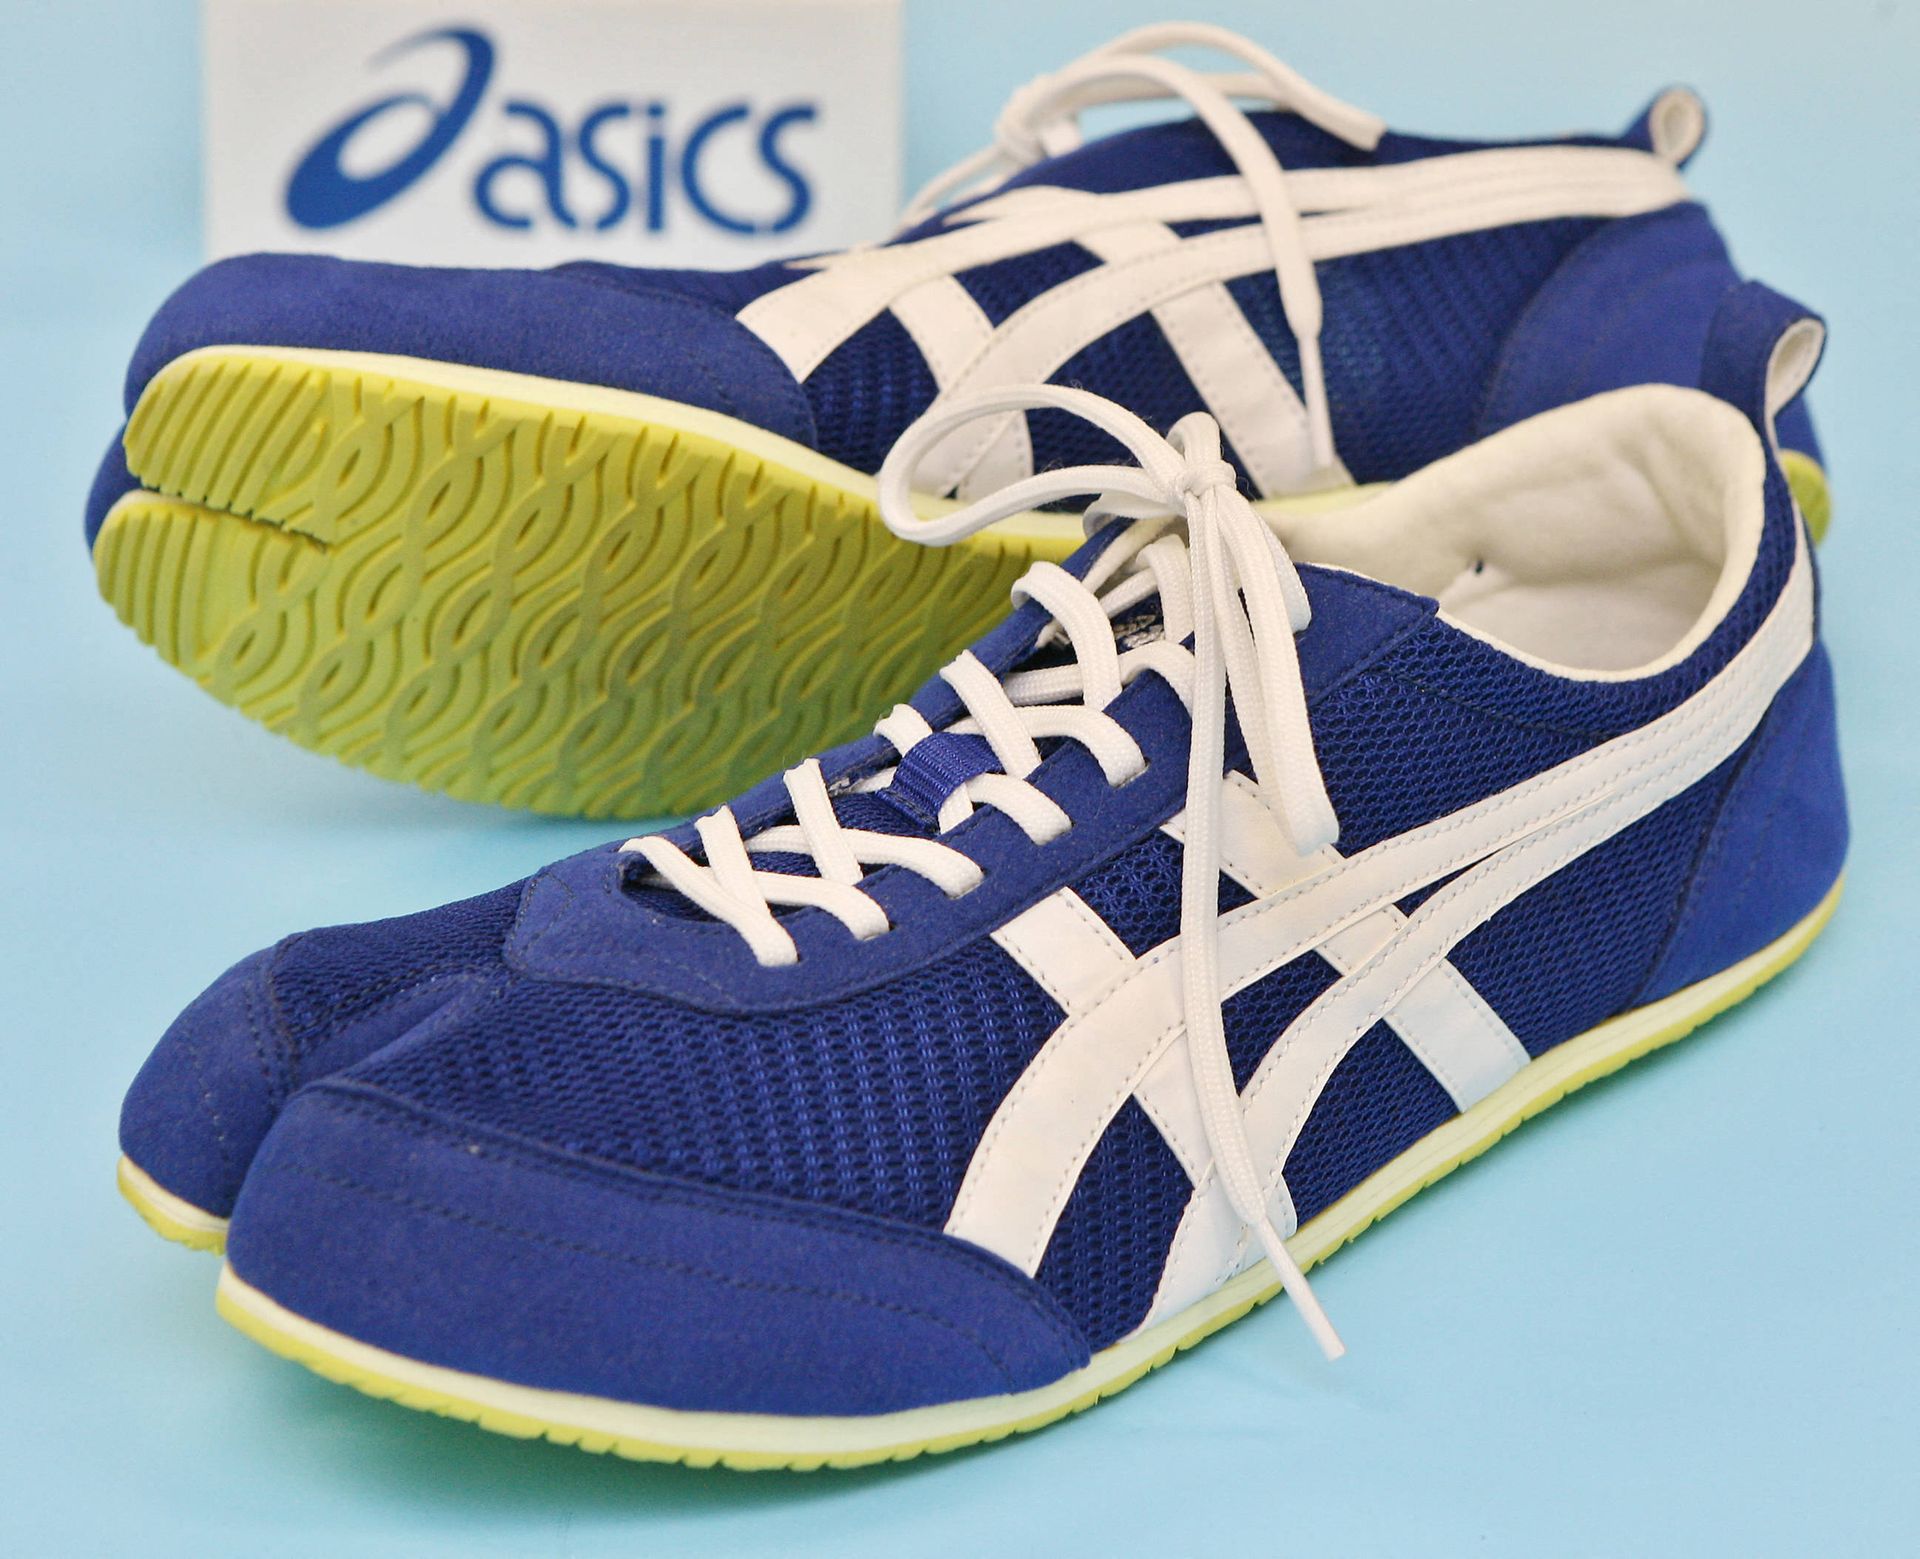 Chaussures de la marque japonaise Asics, en 2006